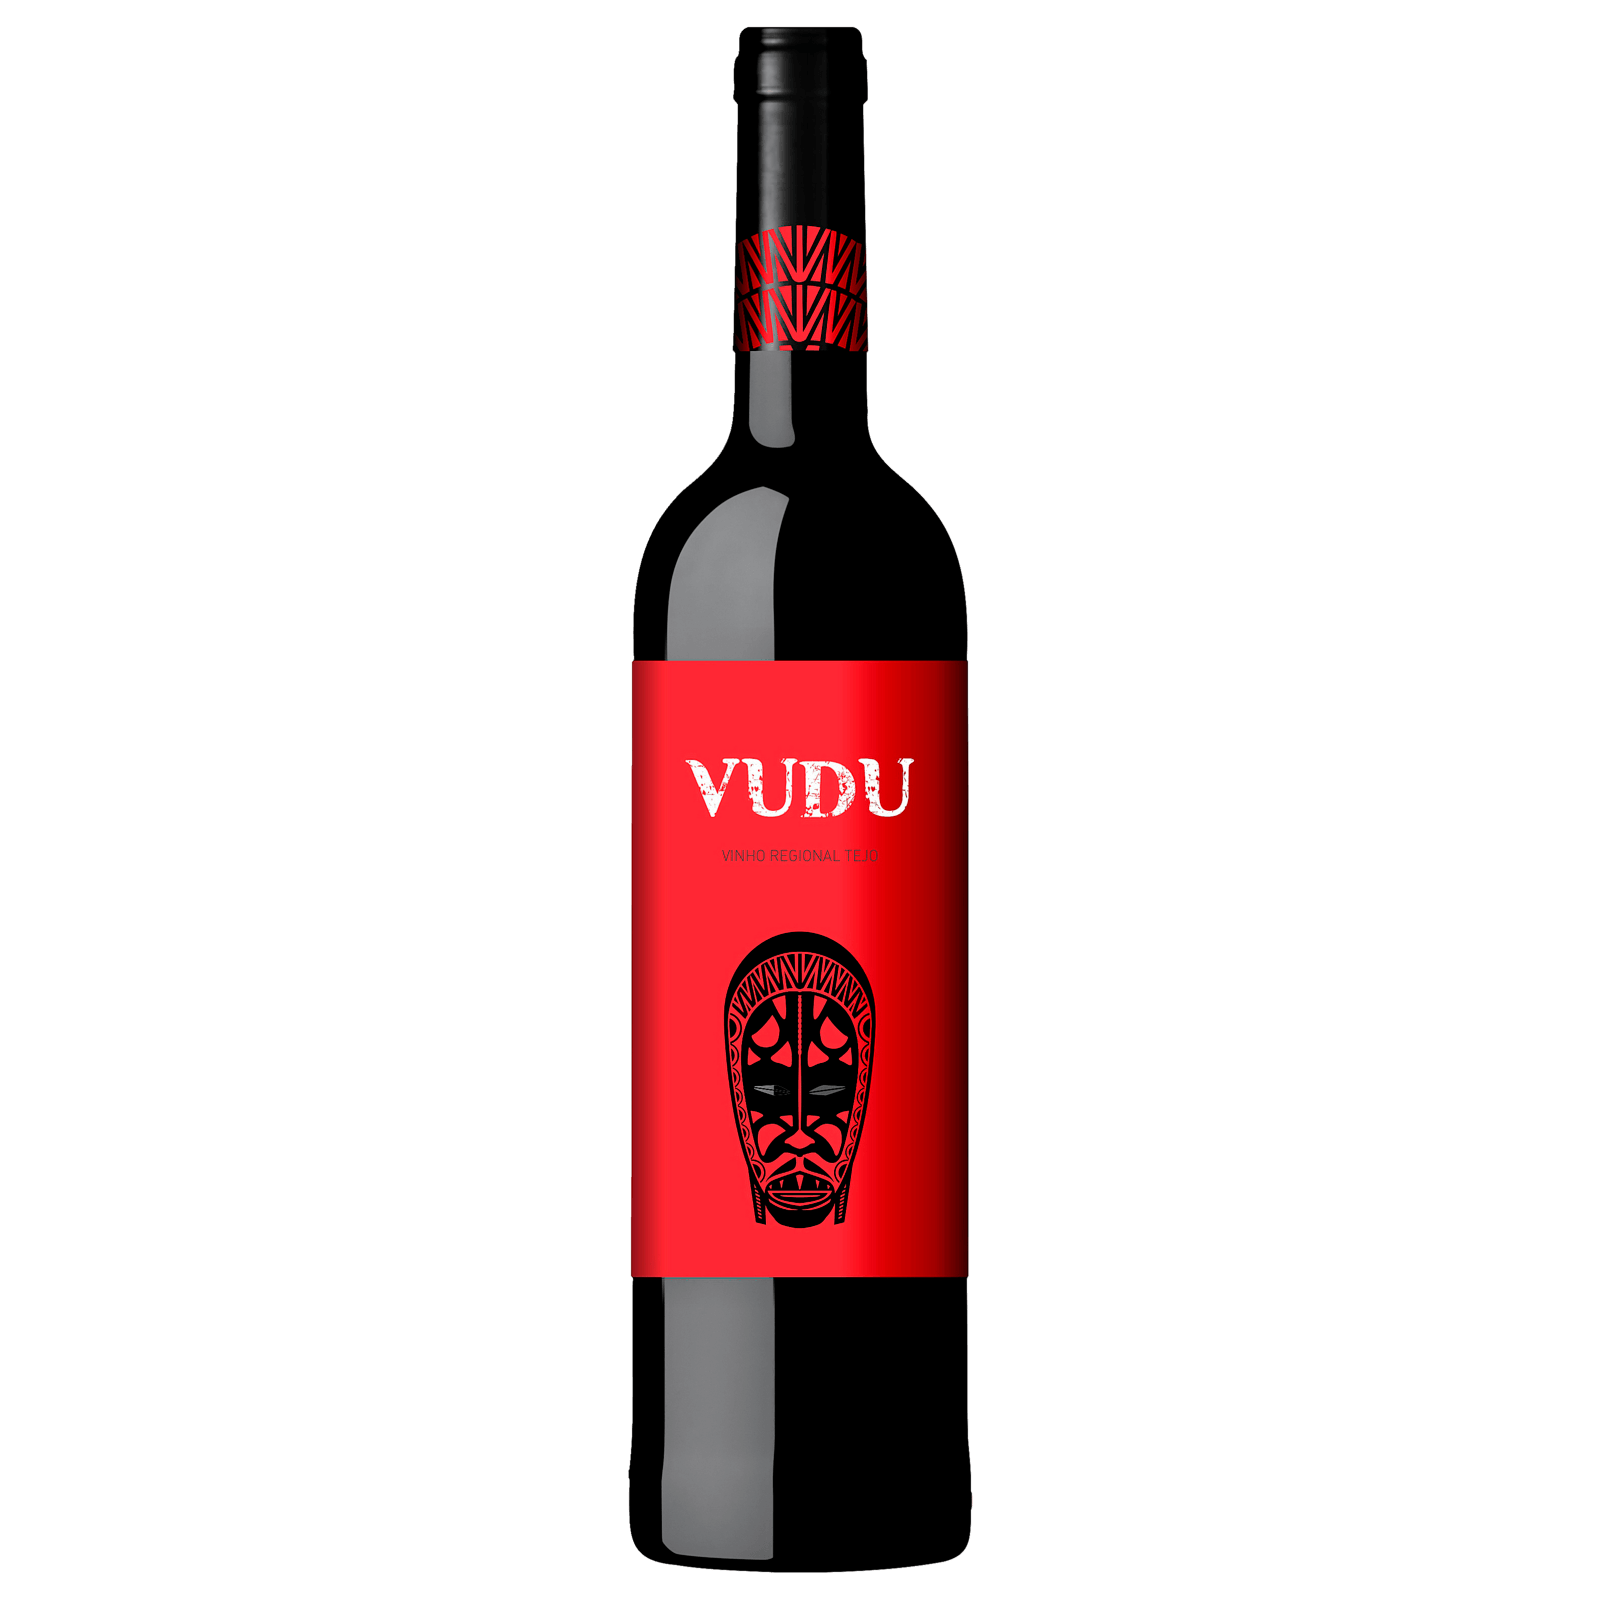 Vudu Rotwein Vinho Regional Tejo online bei 0,75l REWE bestellen! Red